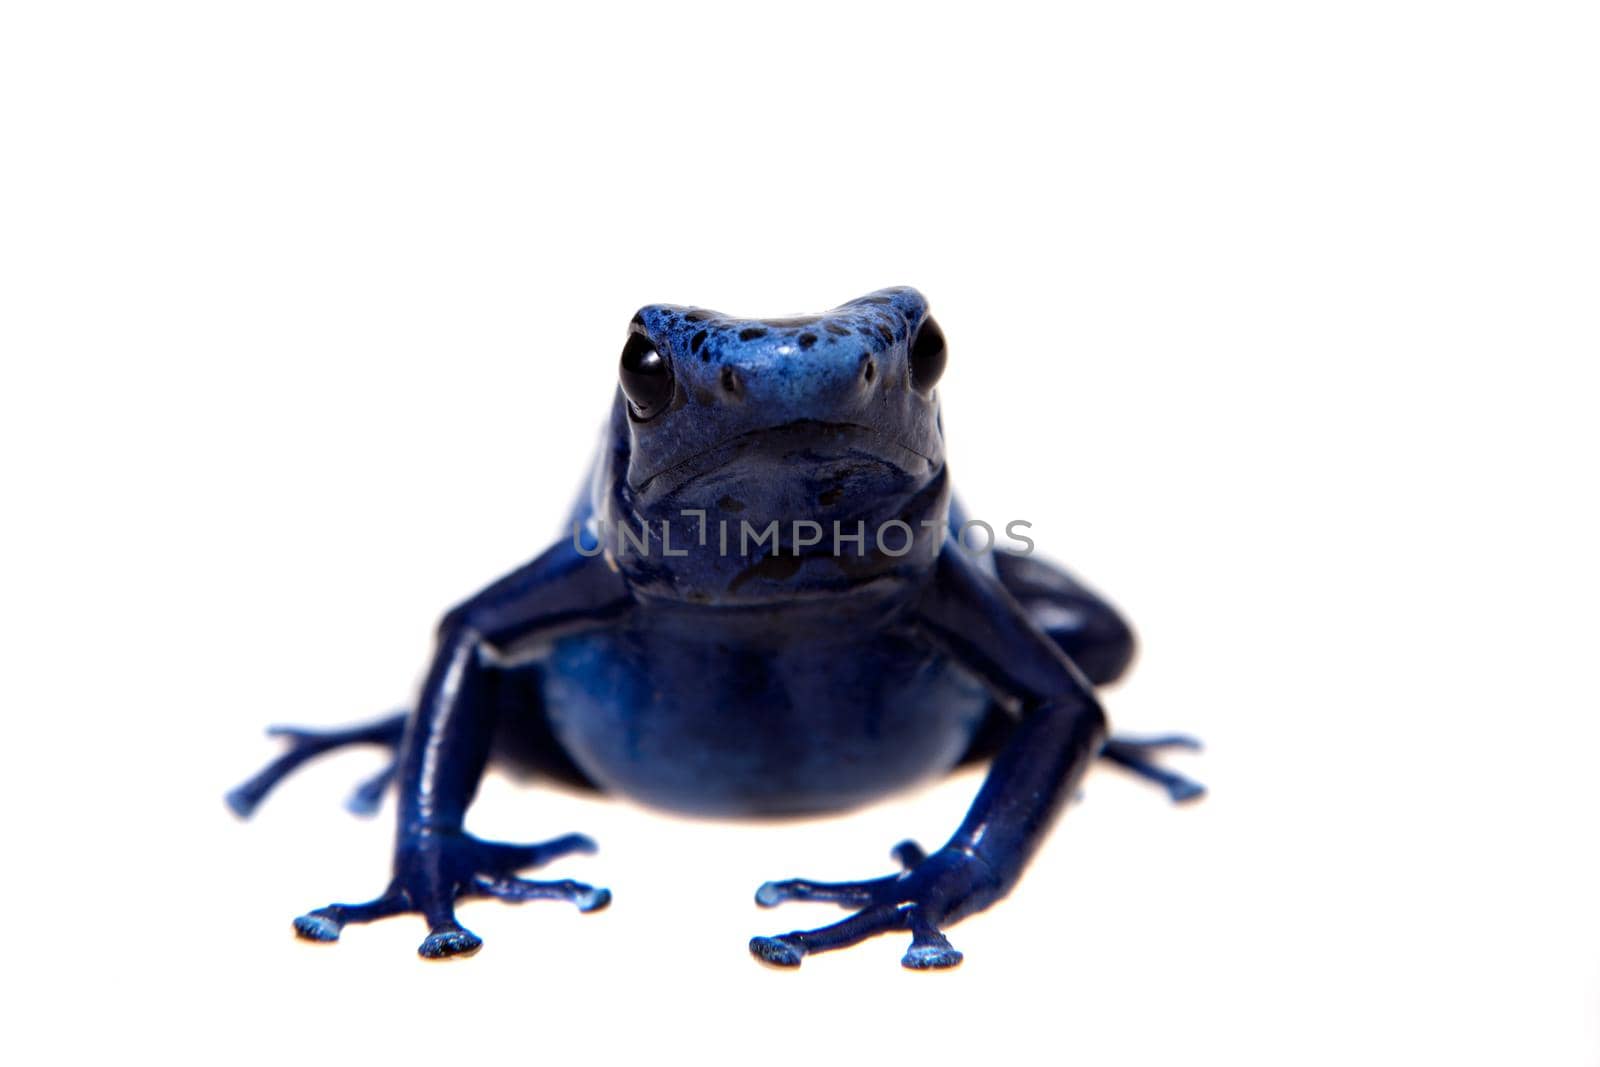 Blue Poison Dart Frog, Dendrobates tinctorius Azureus, on white background.